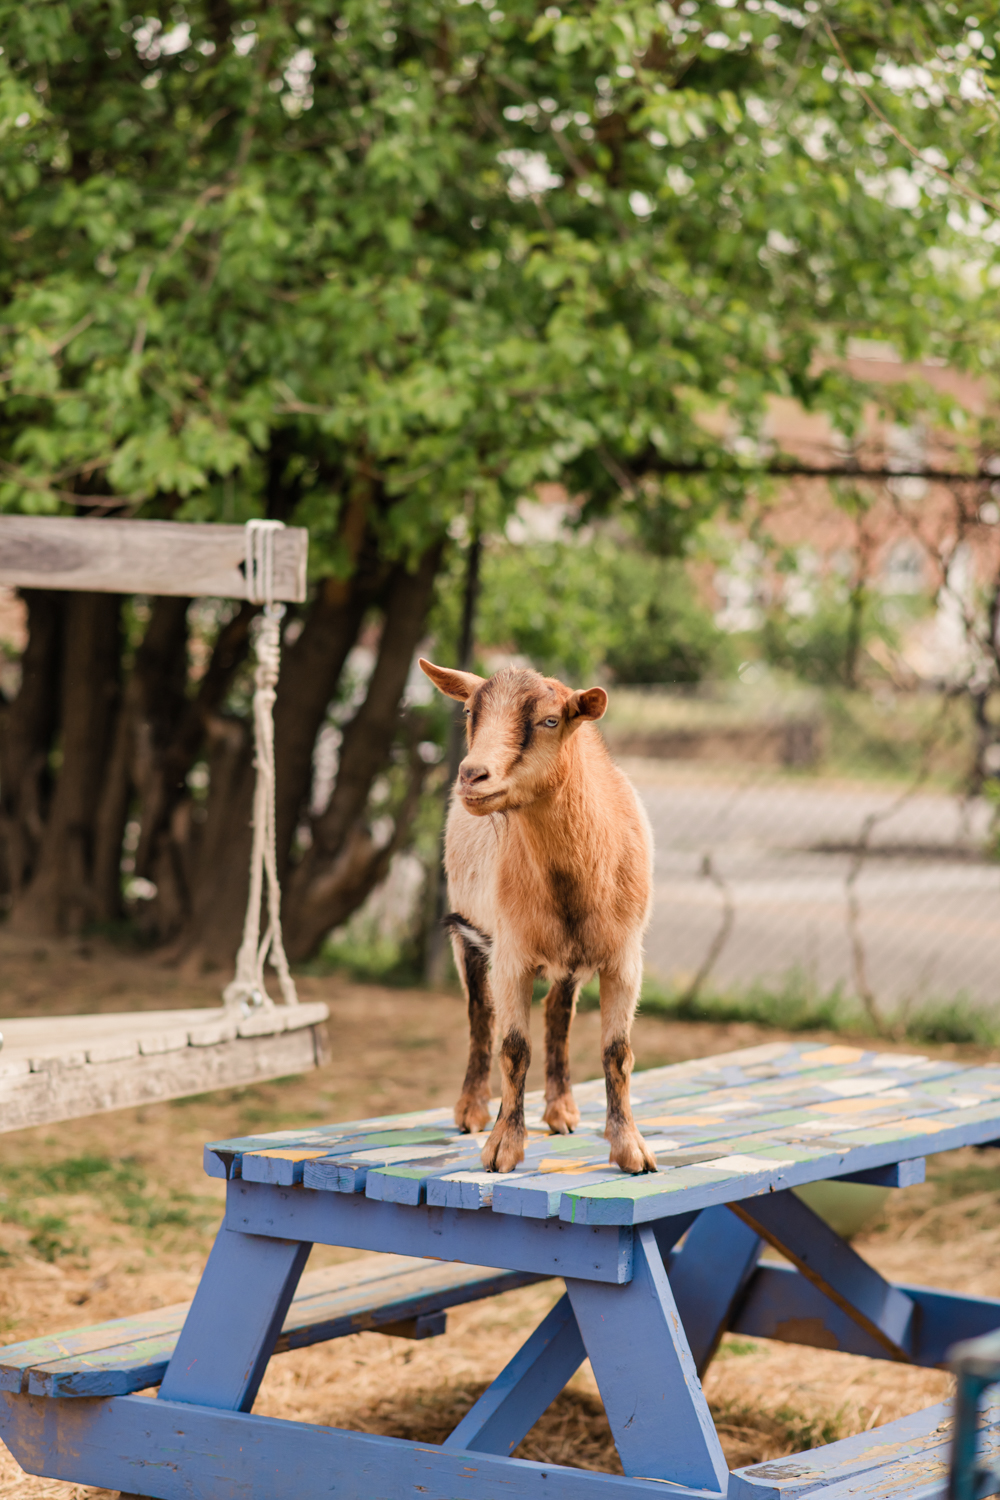 Goat at Filbert Street Garden